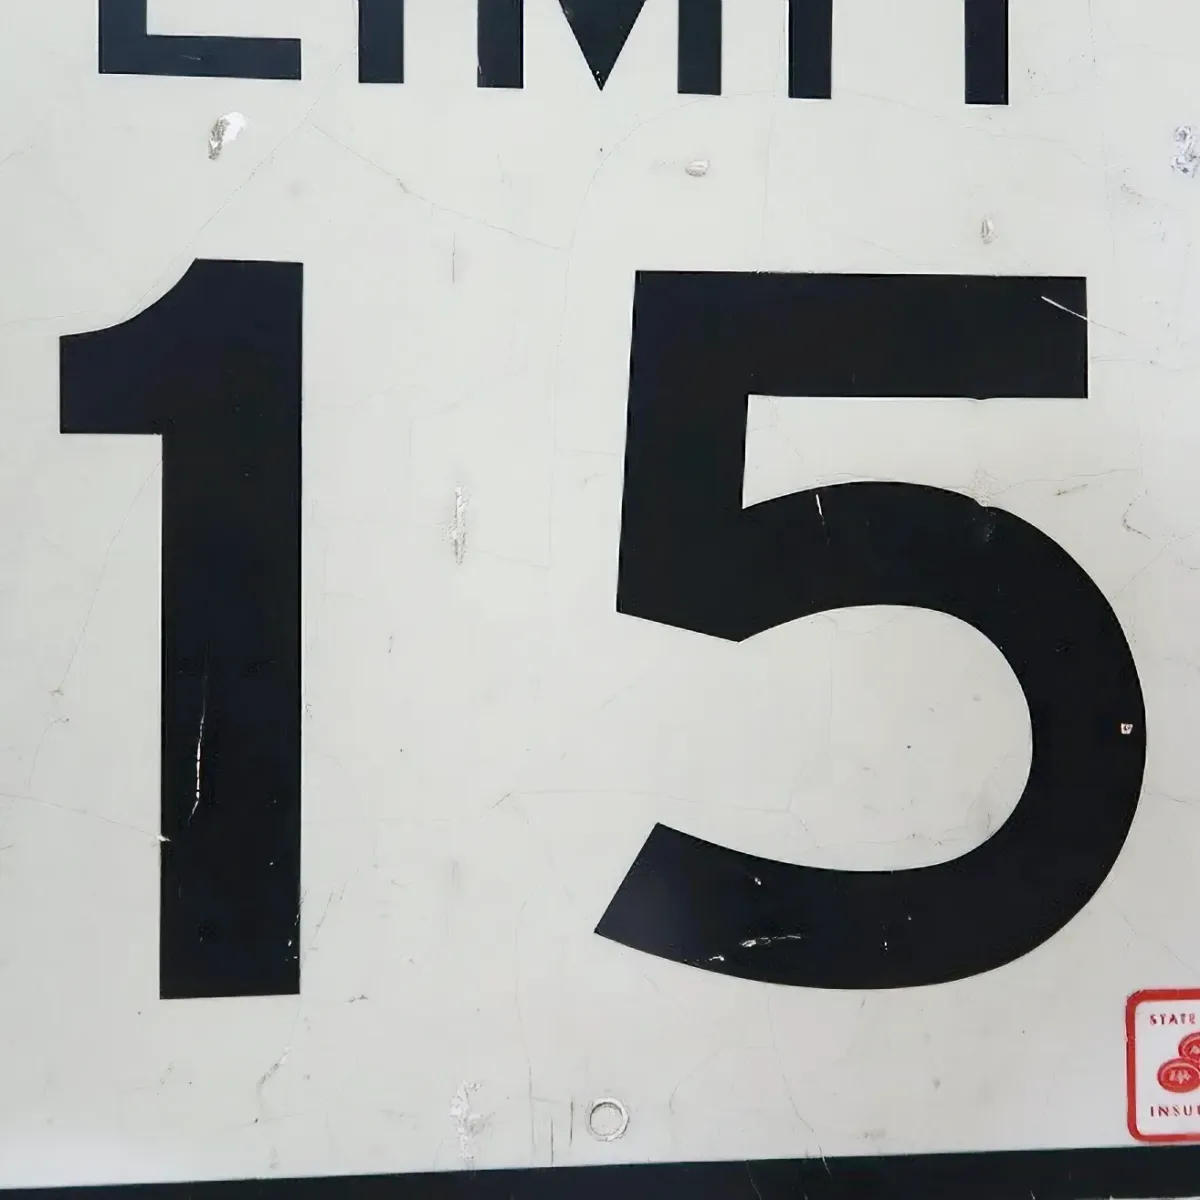 ロードサイン SPEED LIMIT 15